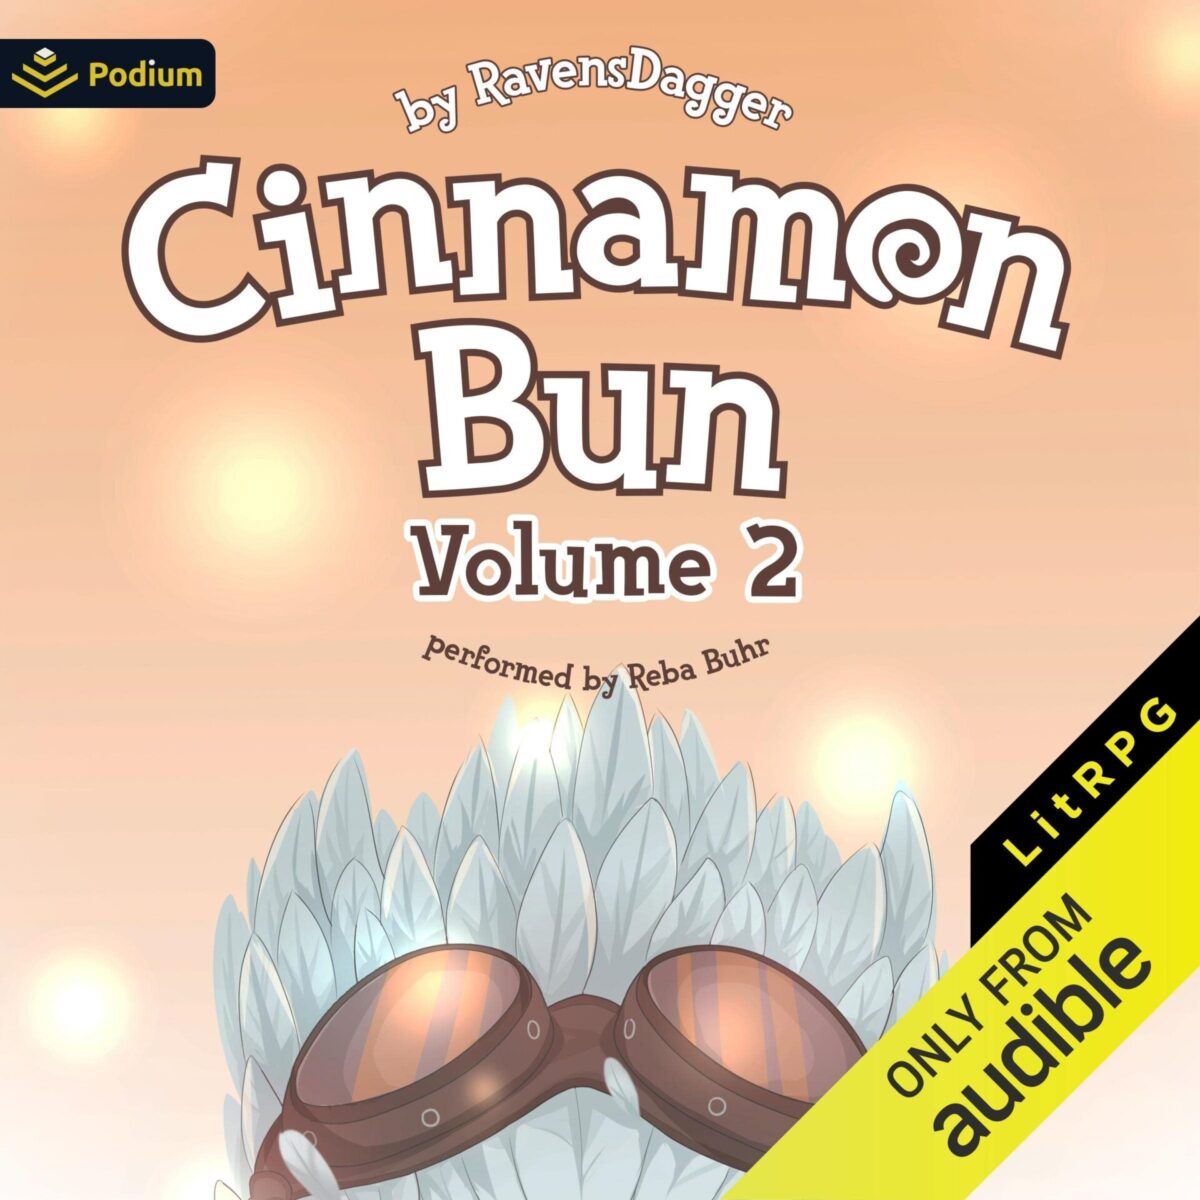 Cinnamon Bun: Volume 2